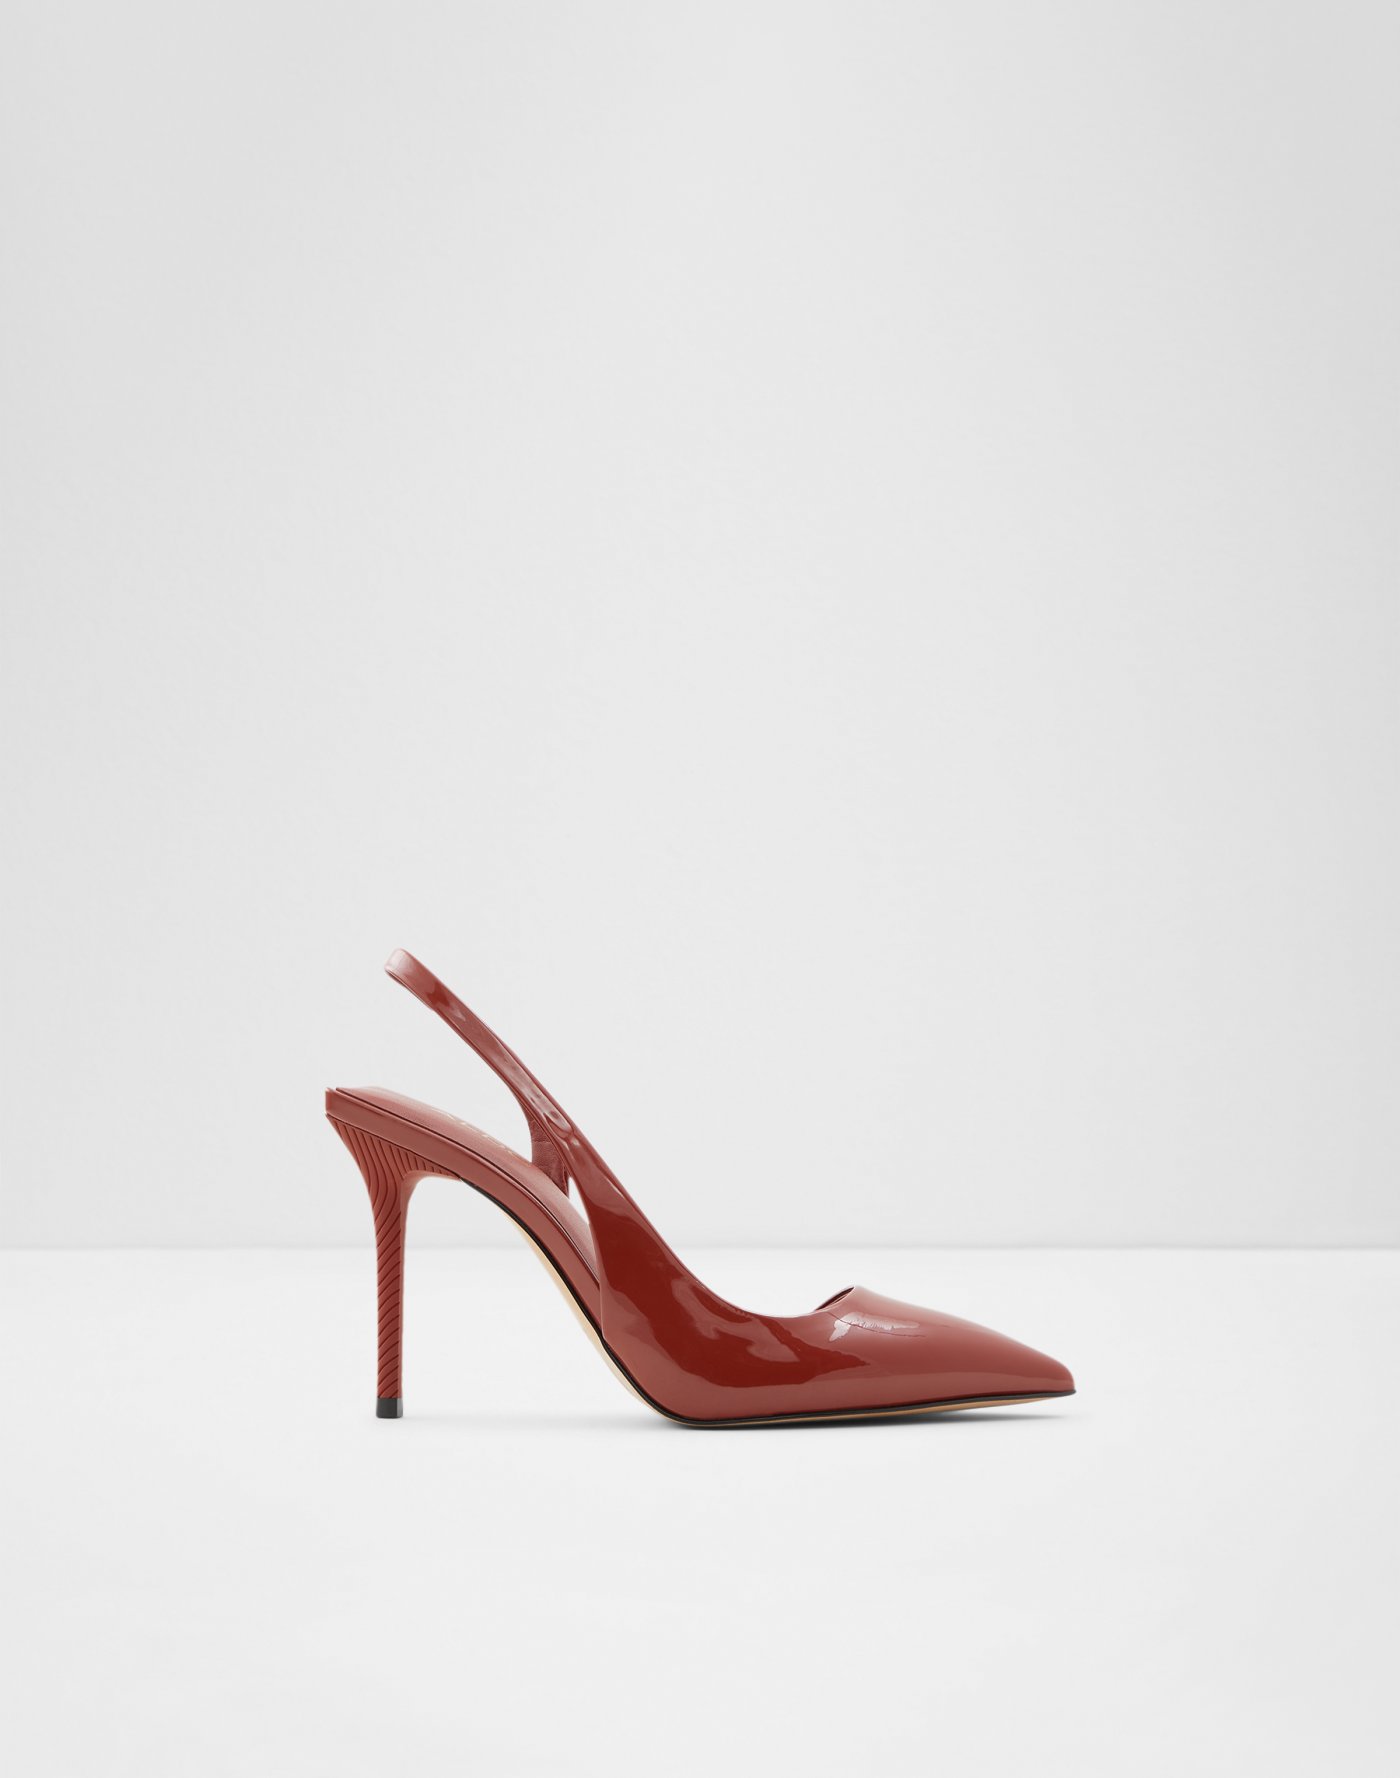 Buy > red heels aldo > in stock